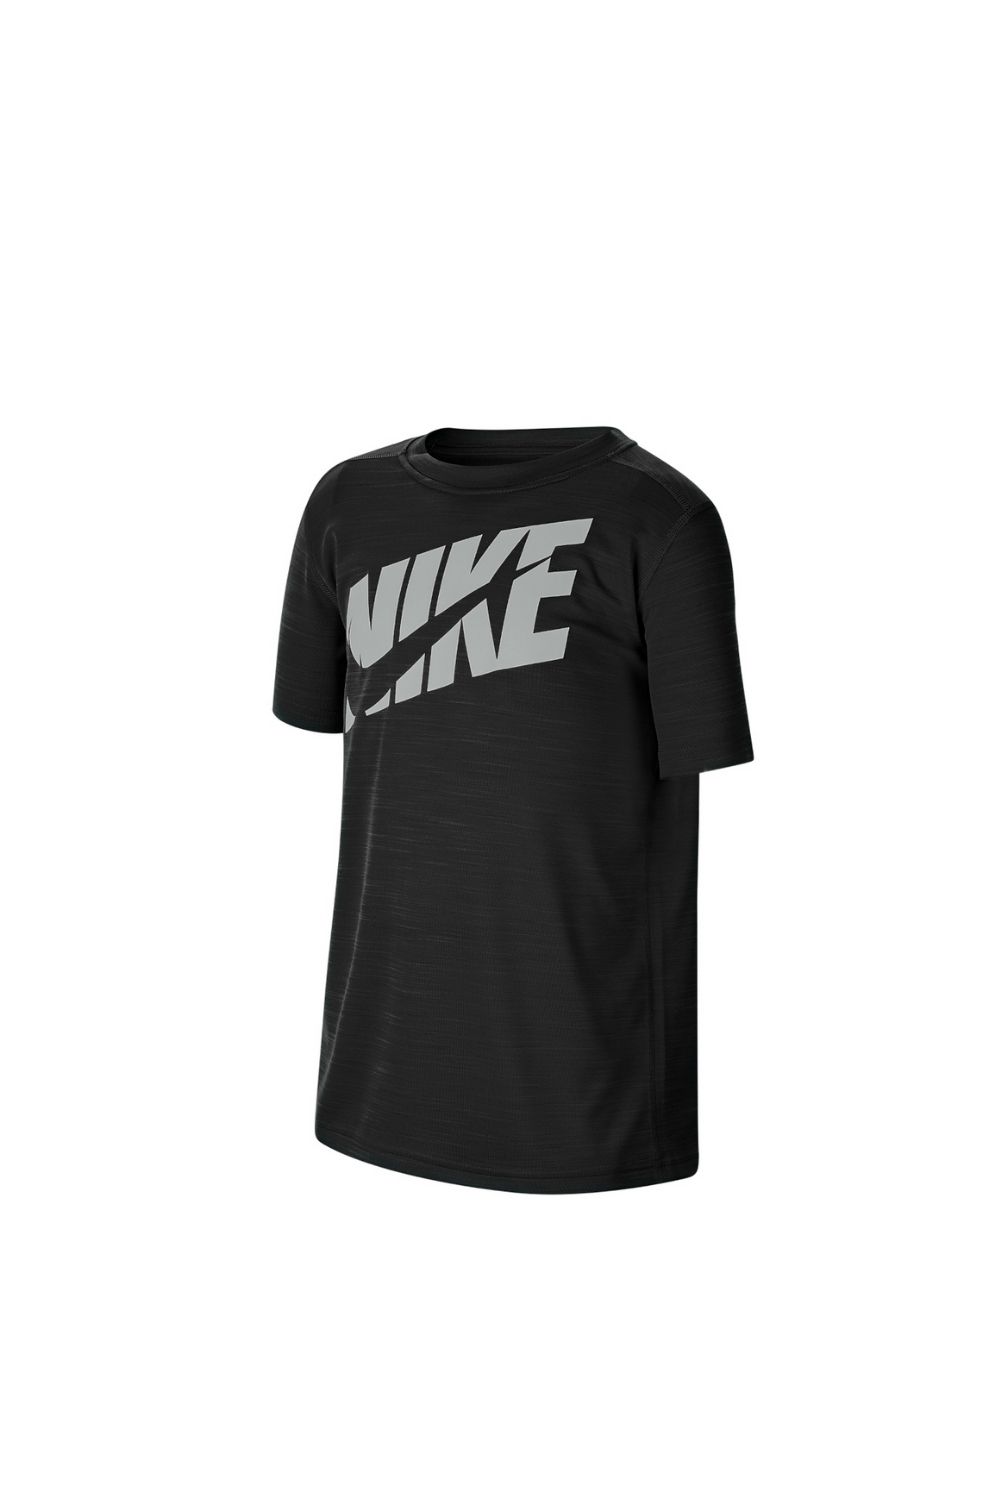 Παιδικά/Boys/Ρούχα/Αθλητικά NIKE - Παιδικό t-shirt NIKE μαύρο